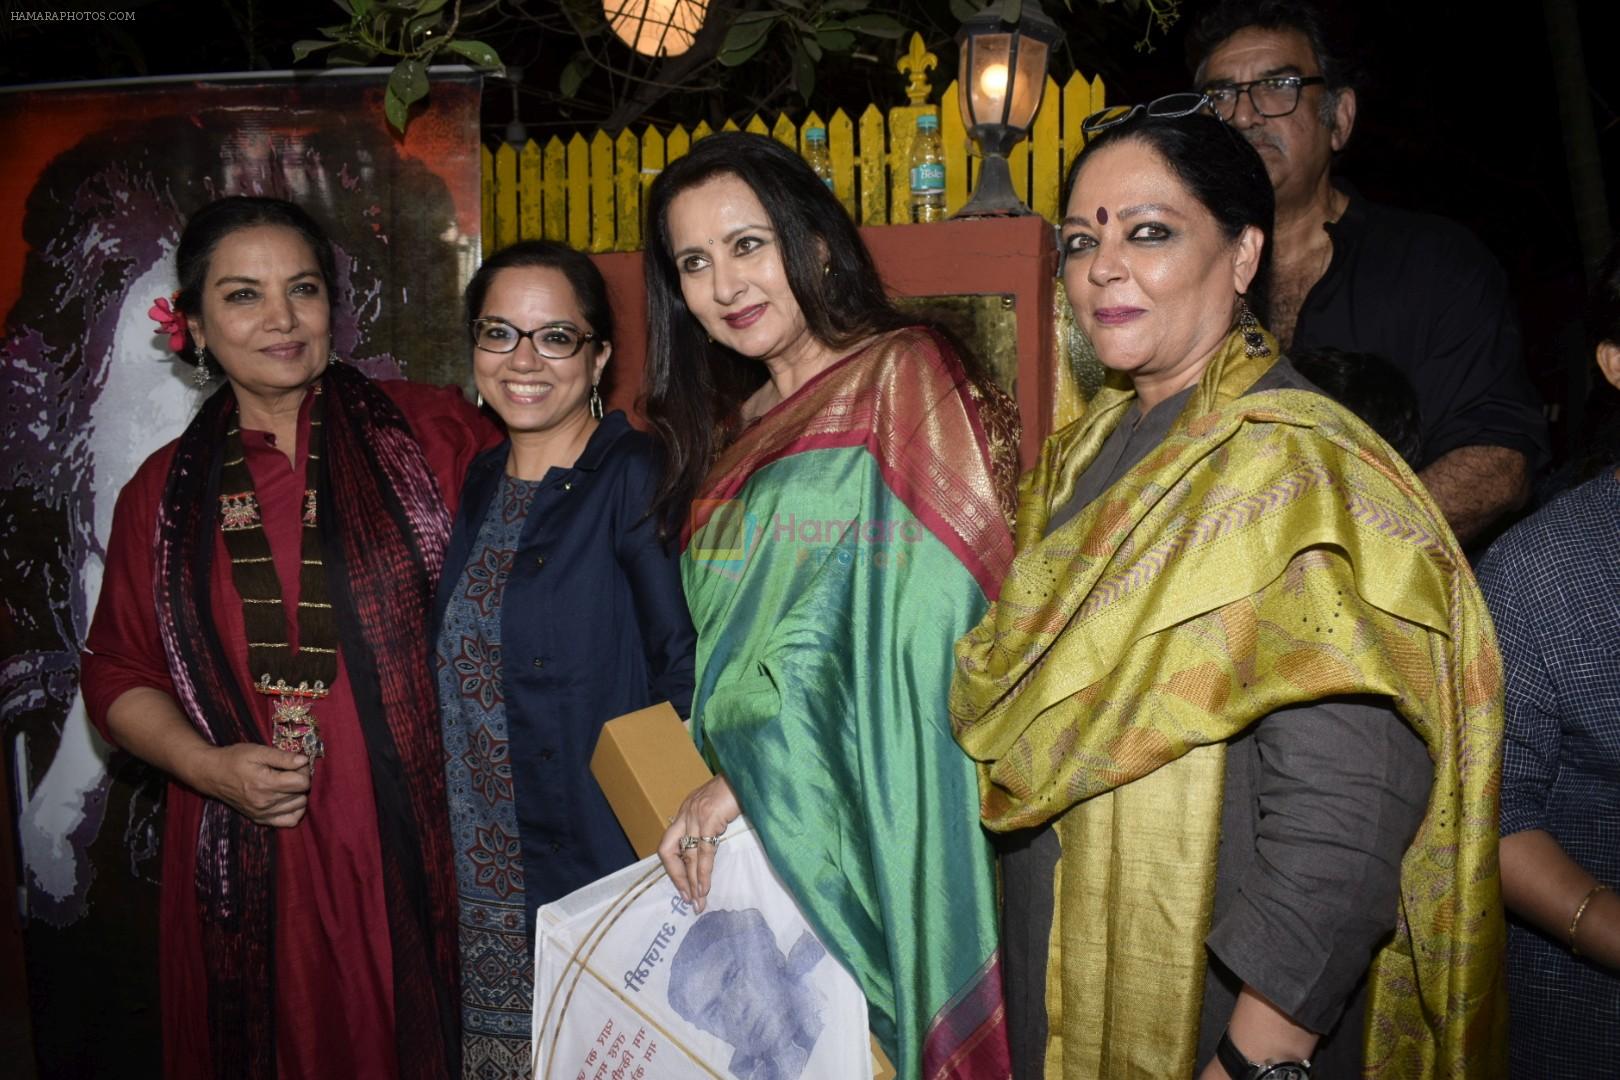 Shabana Azmi, Tanvi Azmi, Poonam Dhillon, Tanuja Chandra at Kaifi Azmi's centenary celebrations with a musical evening at his juhu residence on 10th Jan 2019